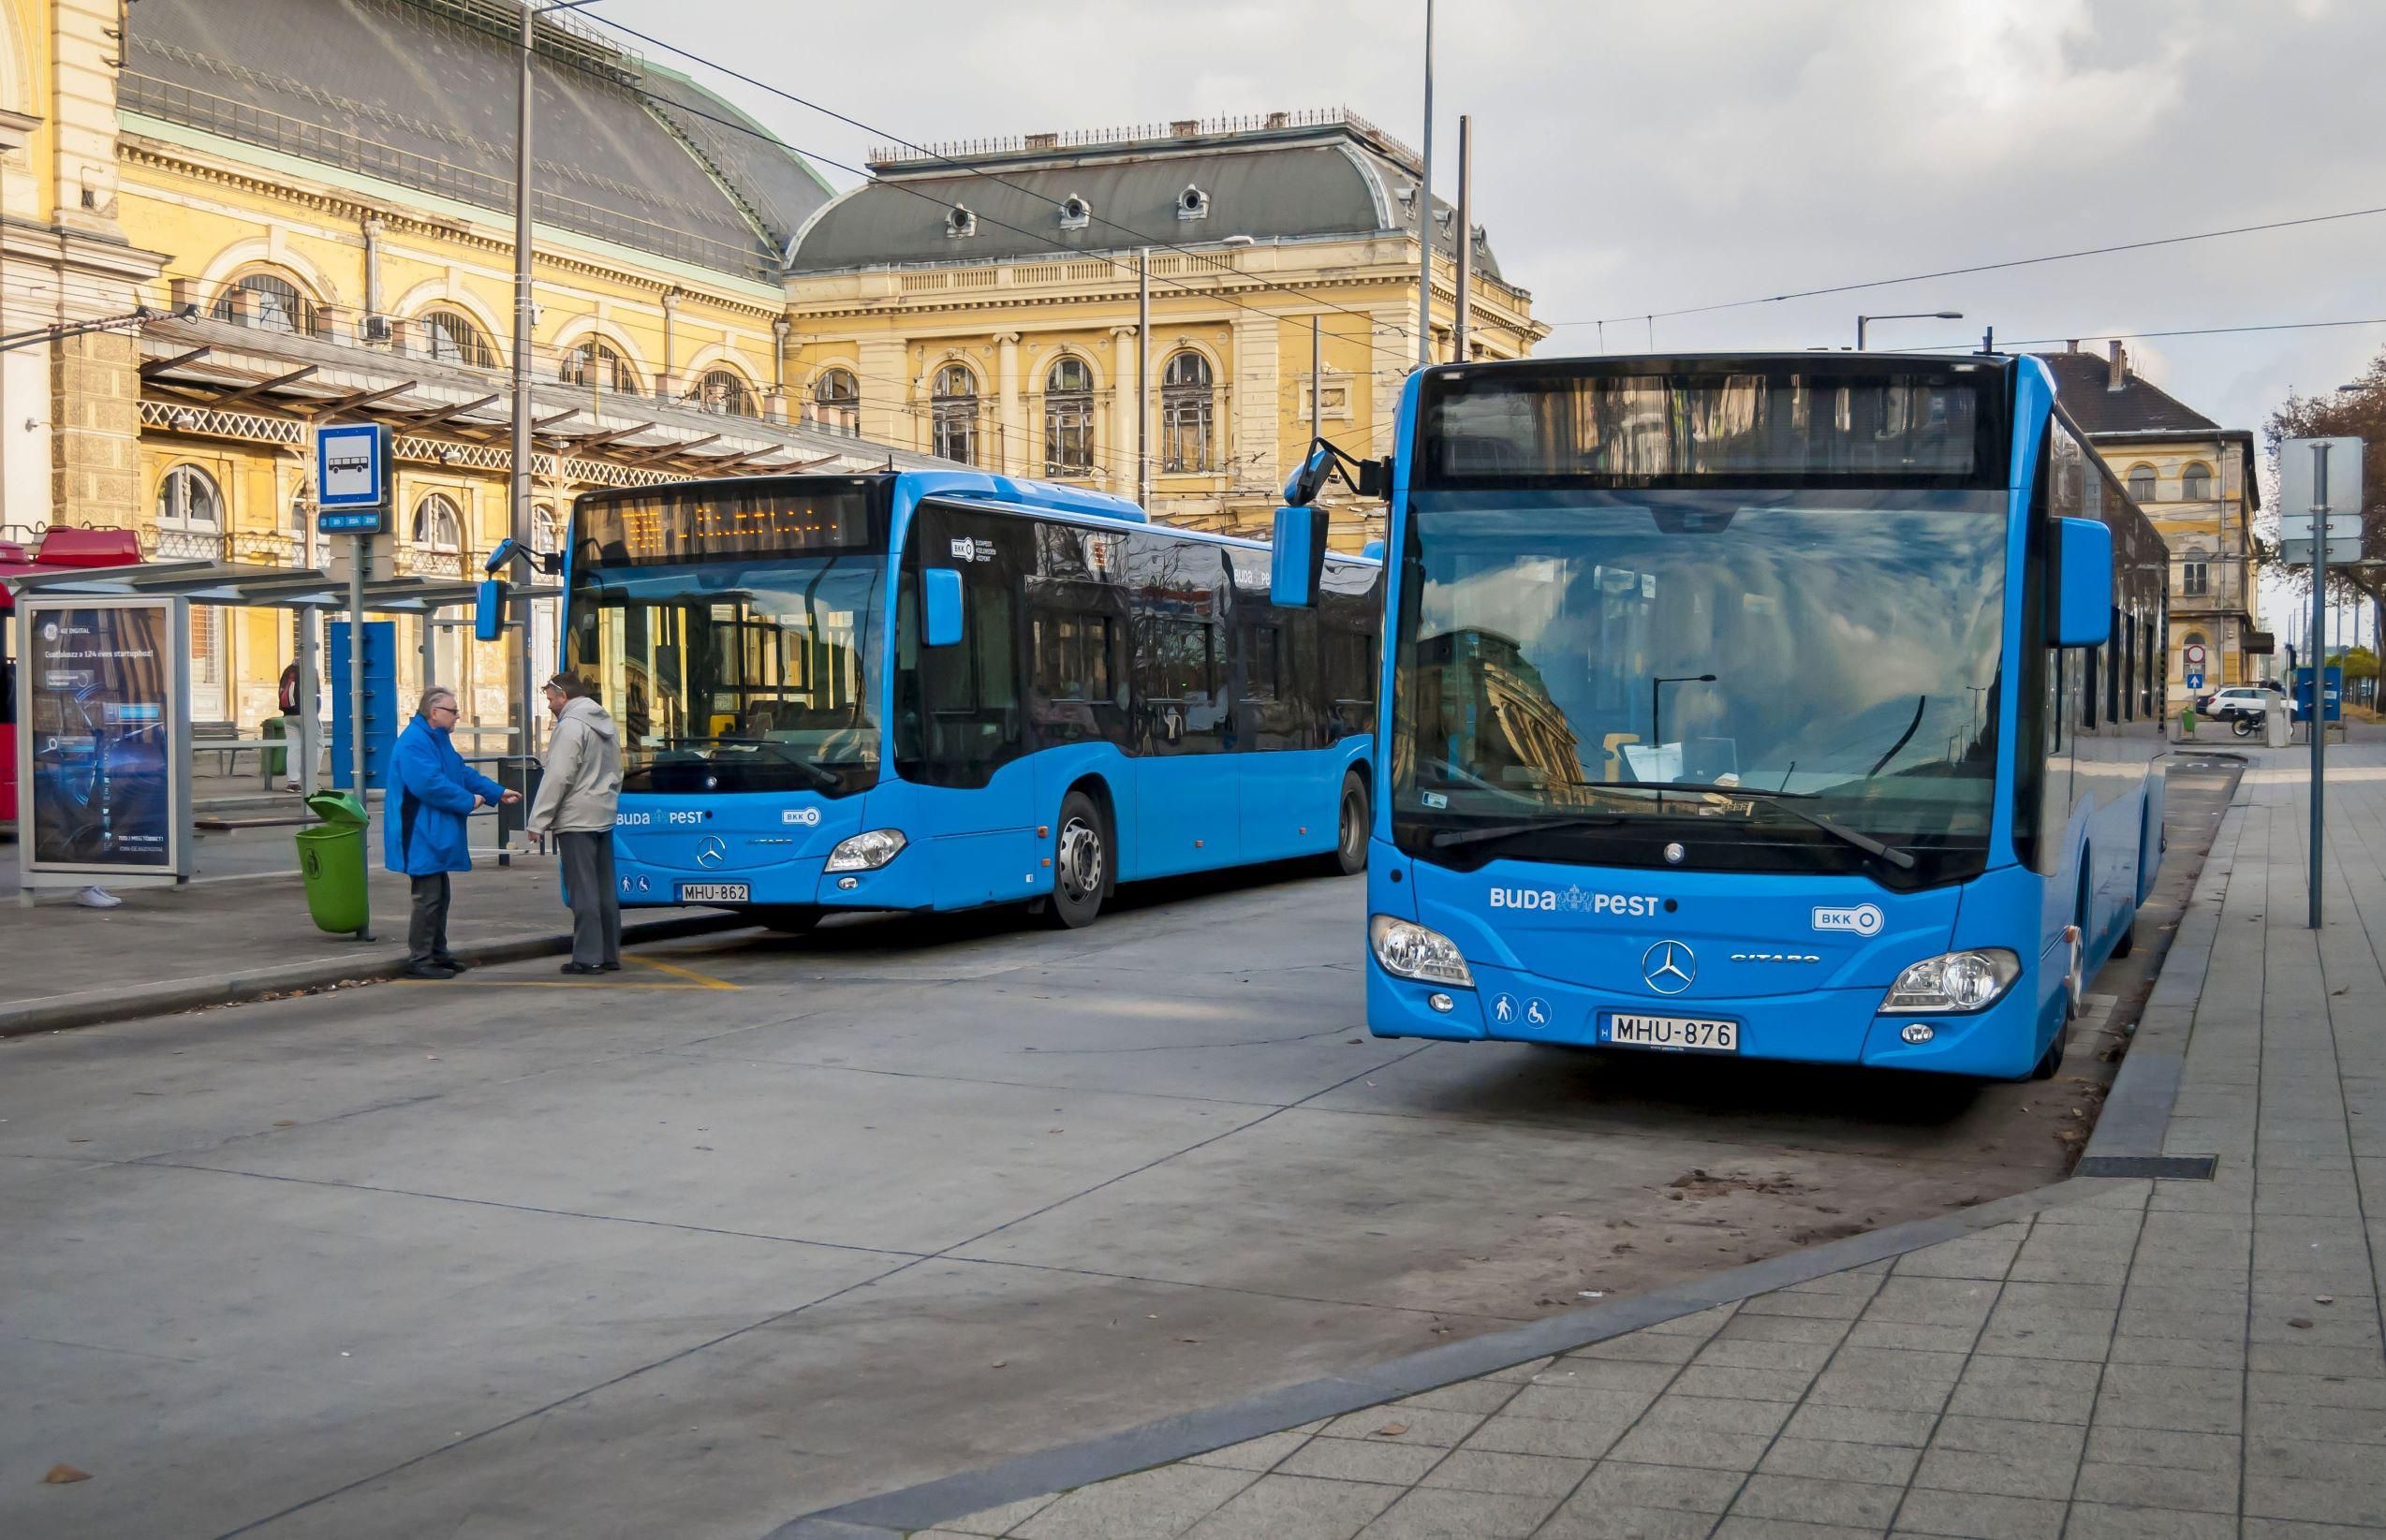 Csökkent a budapesti tömegközlekedés, így a kék buszok kihasználtsága is a járvány miatt